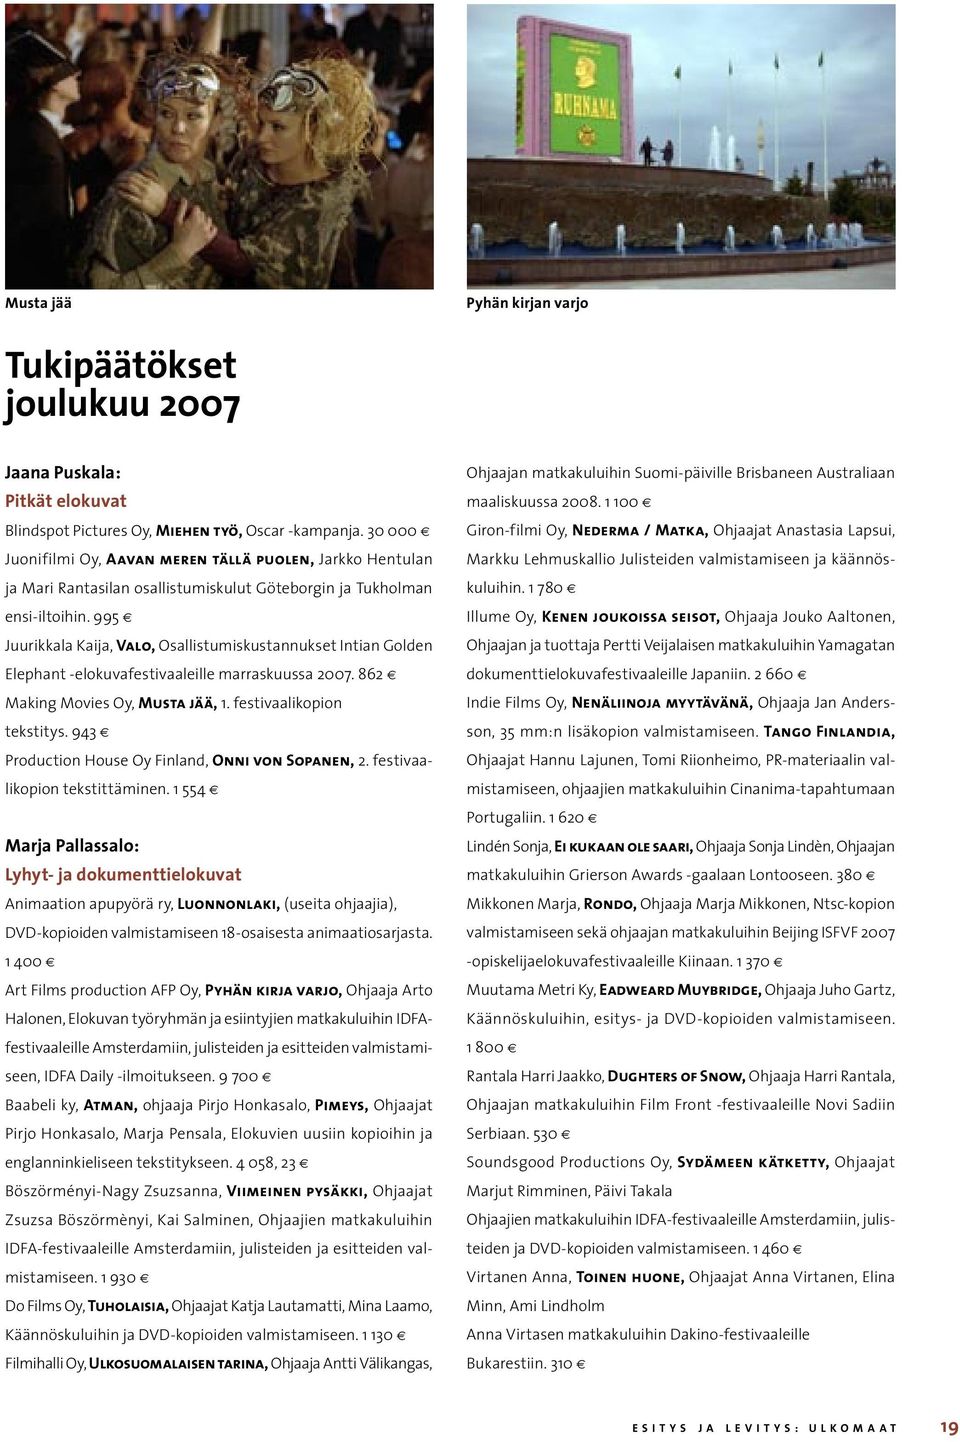 995 Juurikkala Kaija, Valo, Osallistumiskustannukset Intian Golden Elephant -elokuvafestivaaleille marraskuussa 2007. 862 Making Movies Oy, Musta jää, 1. festivaalikopion tekstitys.